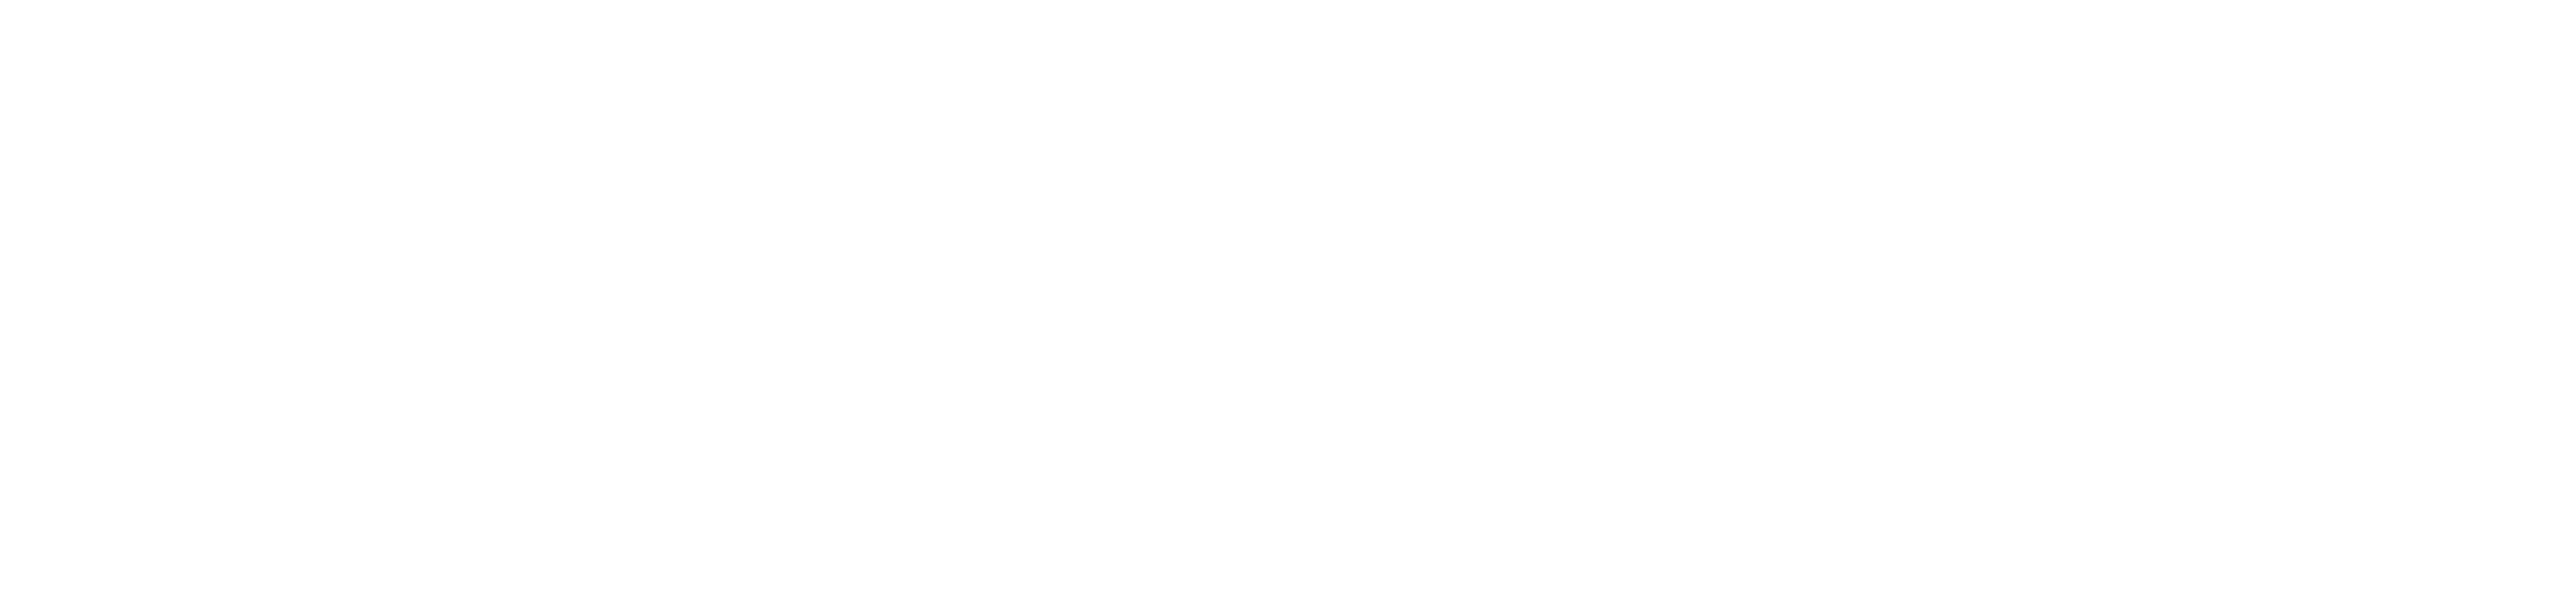 UPI Logo - Full - White